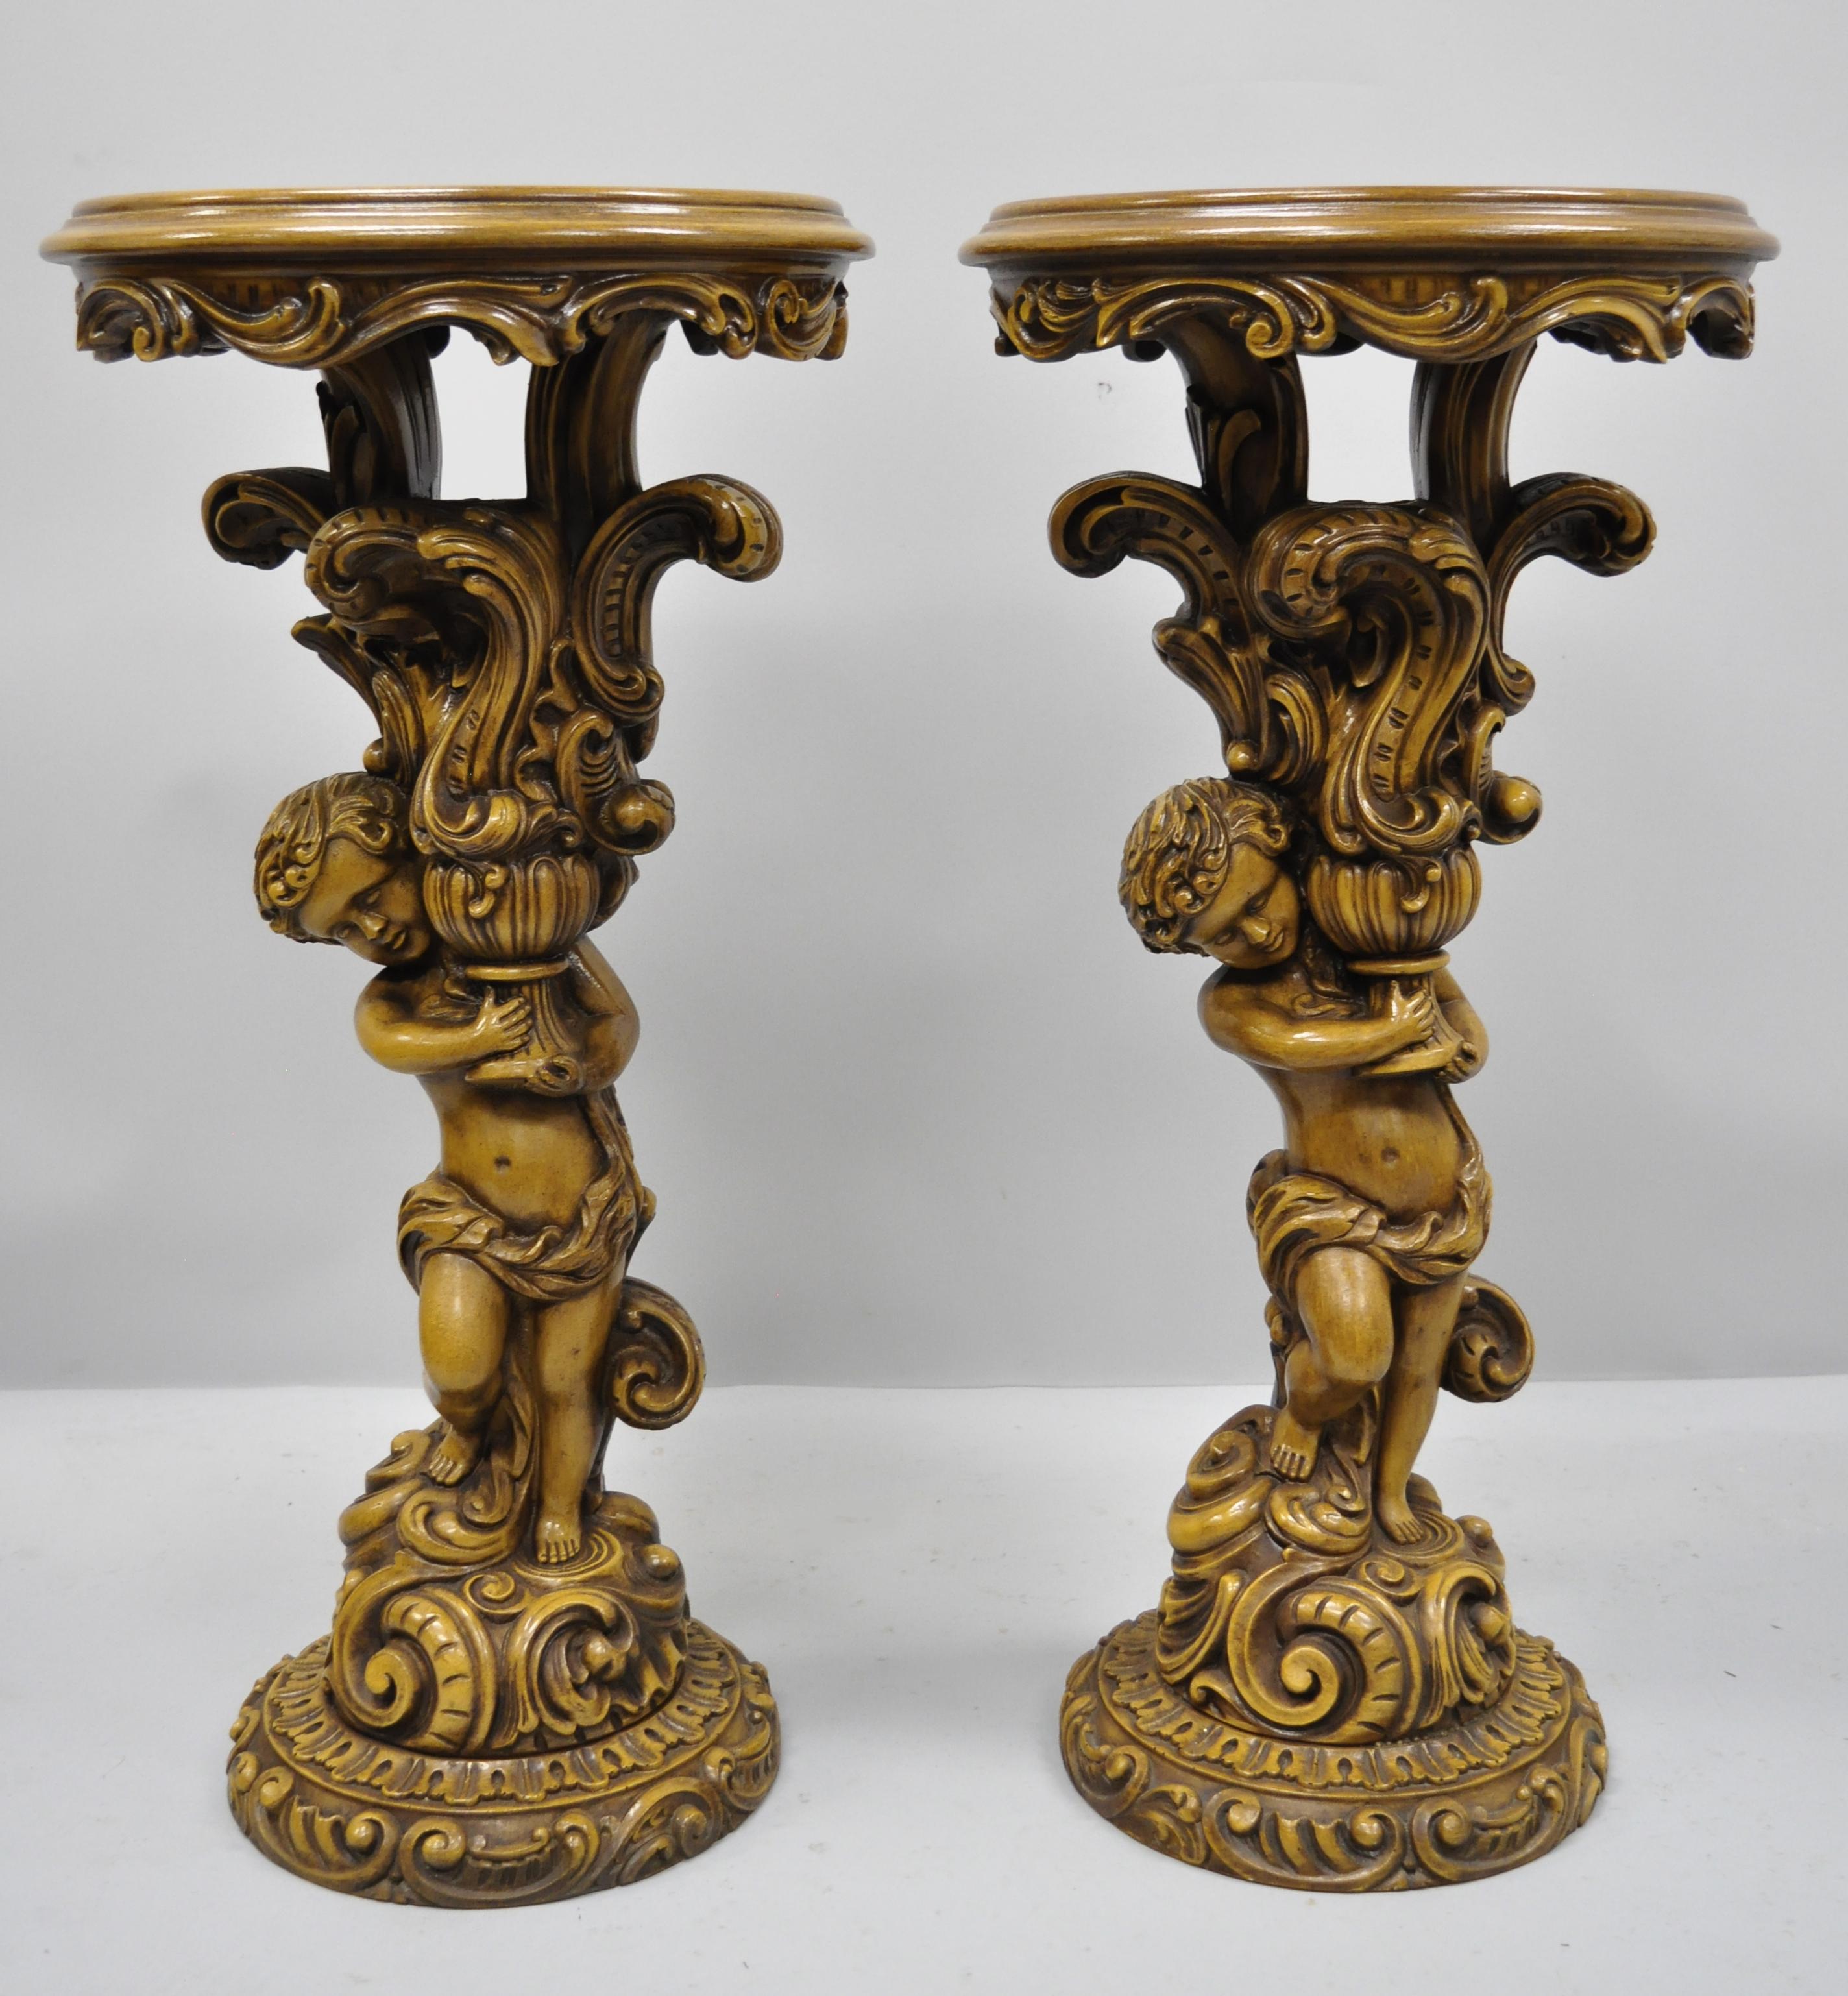 Paar von Französisch Rokoko-Stil figuralen Cherub Engel Sockel Pflanze steht Tabelle. Die Stücke zeichnen sich durch runde, eingesetzte Glasplatten, figurale Cherub-Säulen und einen großartigen Stil und Form aus, etwa Mitte bis Ende des 20.